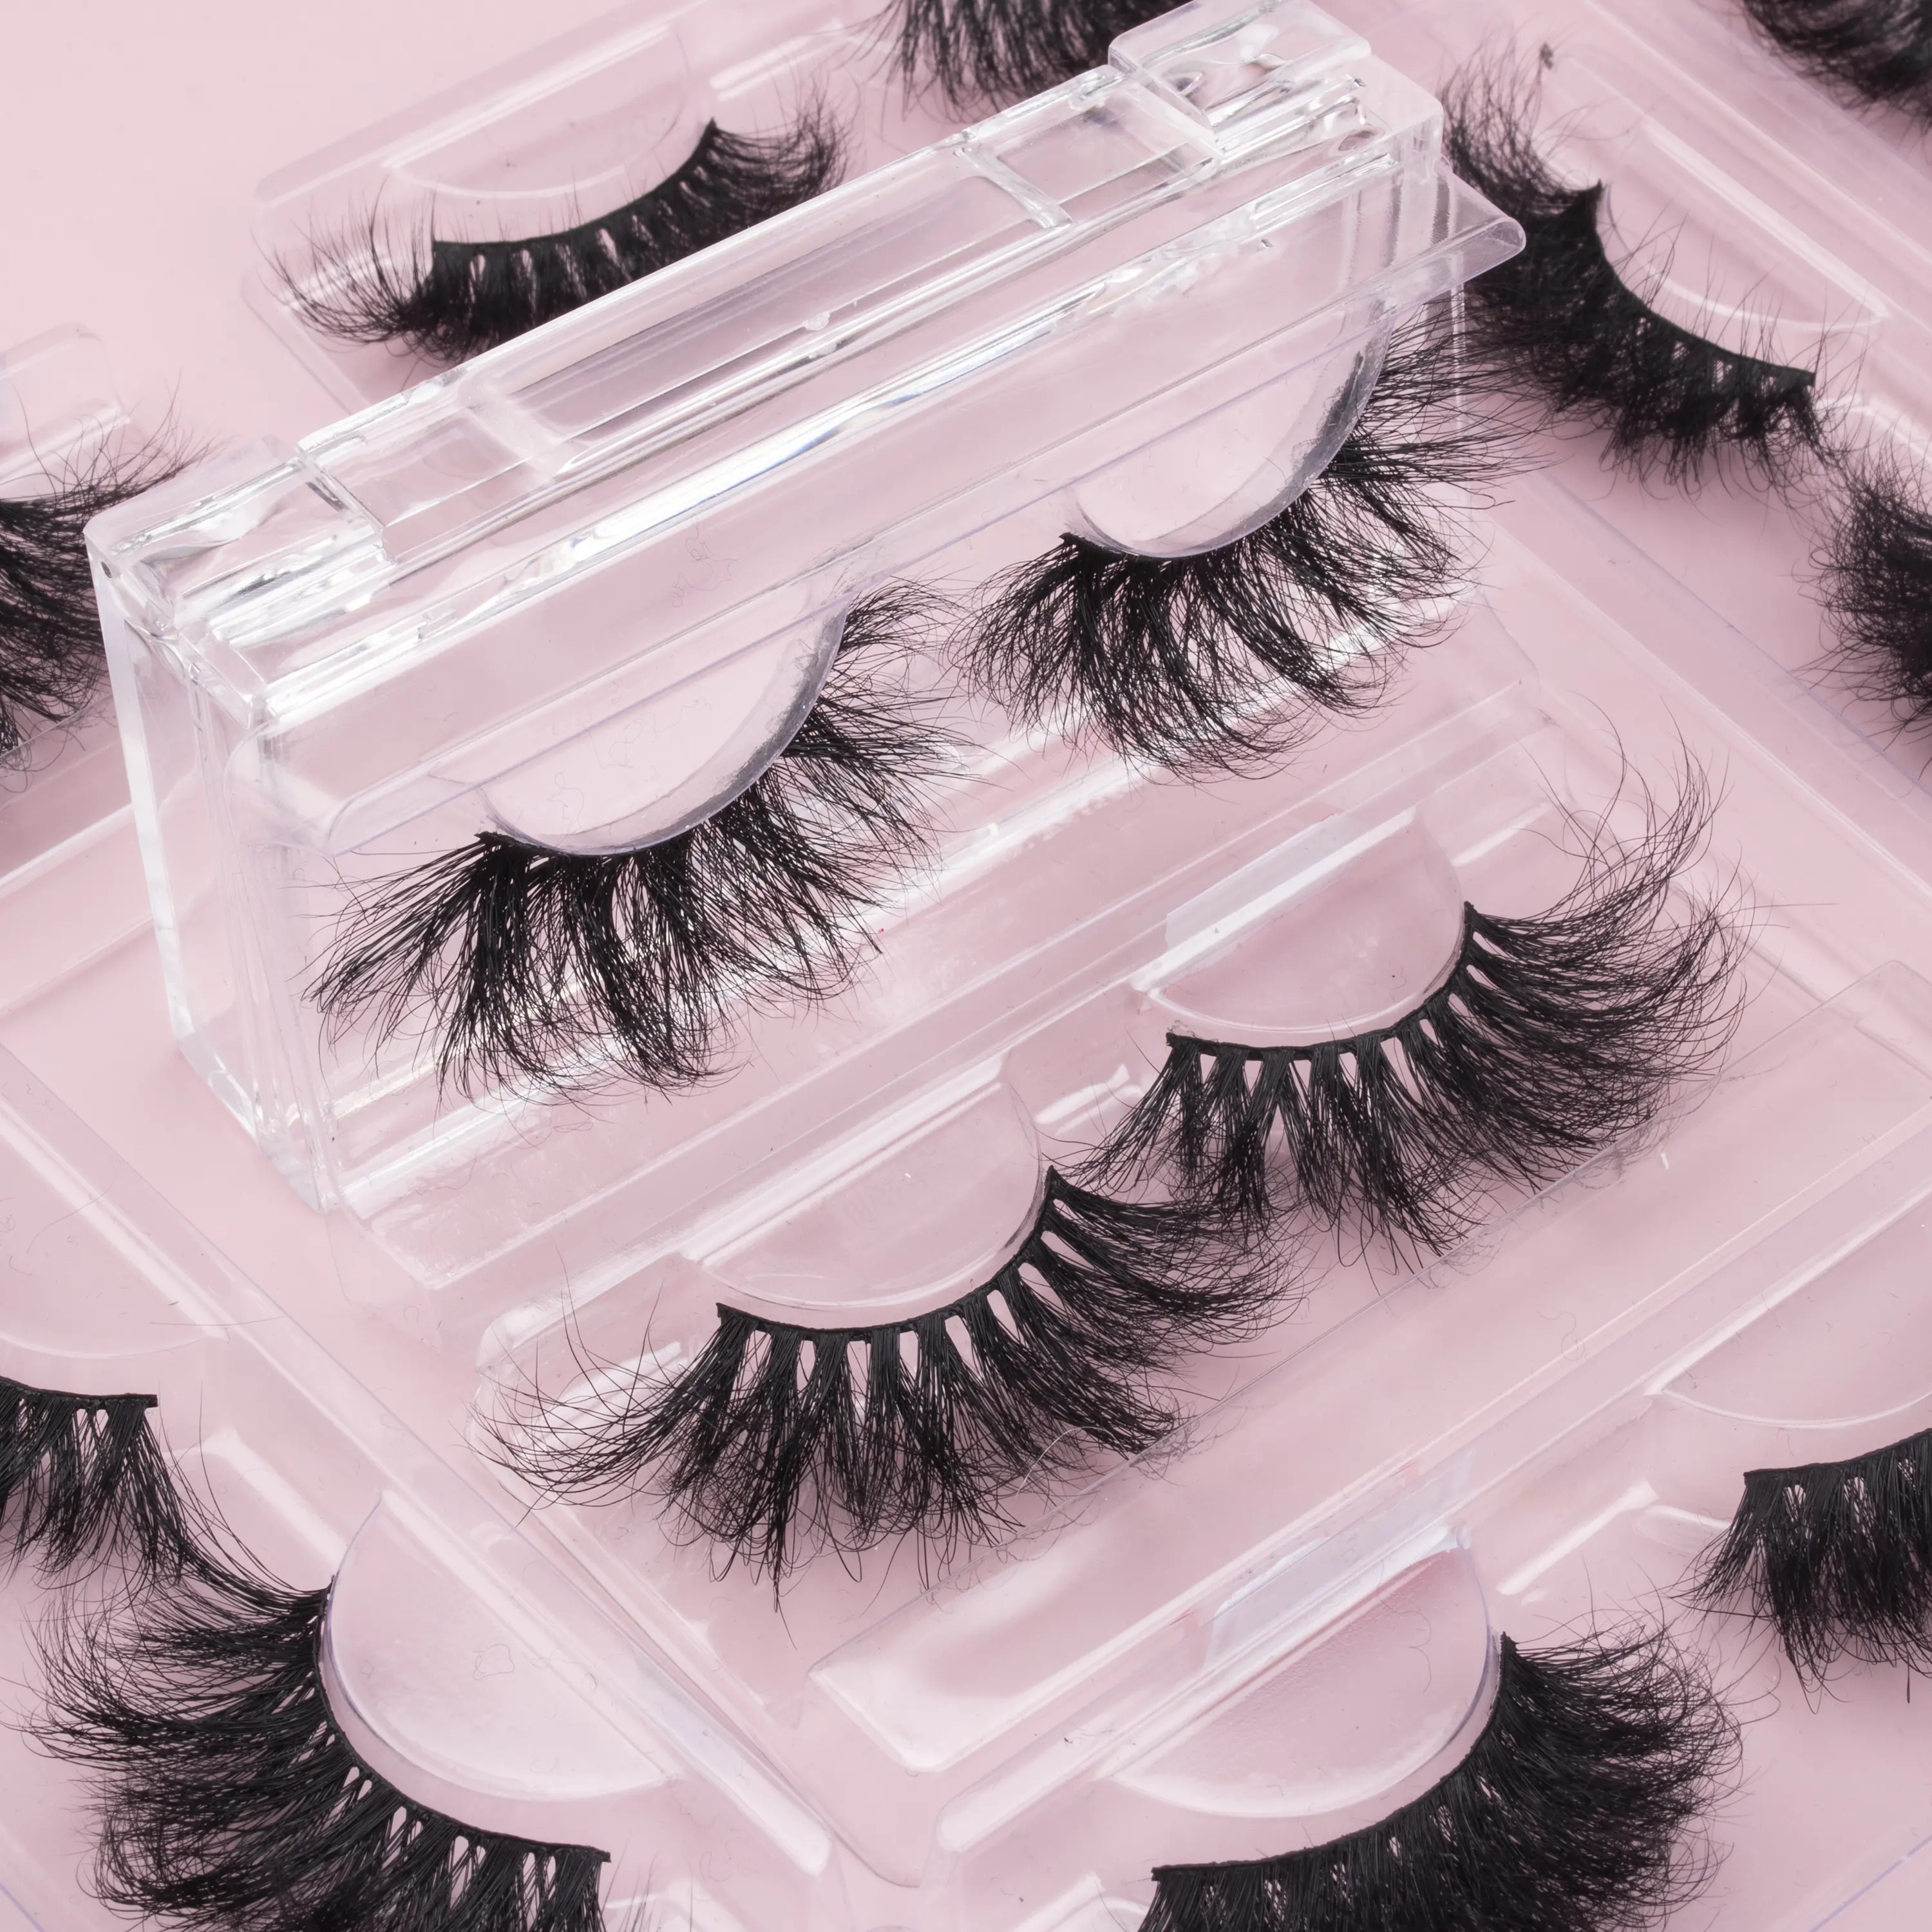 Worldbeauty 5d 밍크 속눈썹 lashes3d 도매 공급 업체 25mm 대량 가짜 눈 속눈썹 100% 진짜 3d 밍크 모피 속눈썹 유통 업체